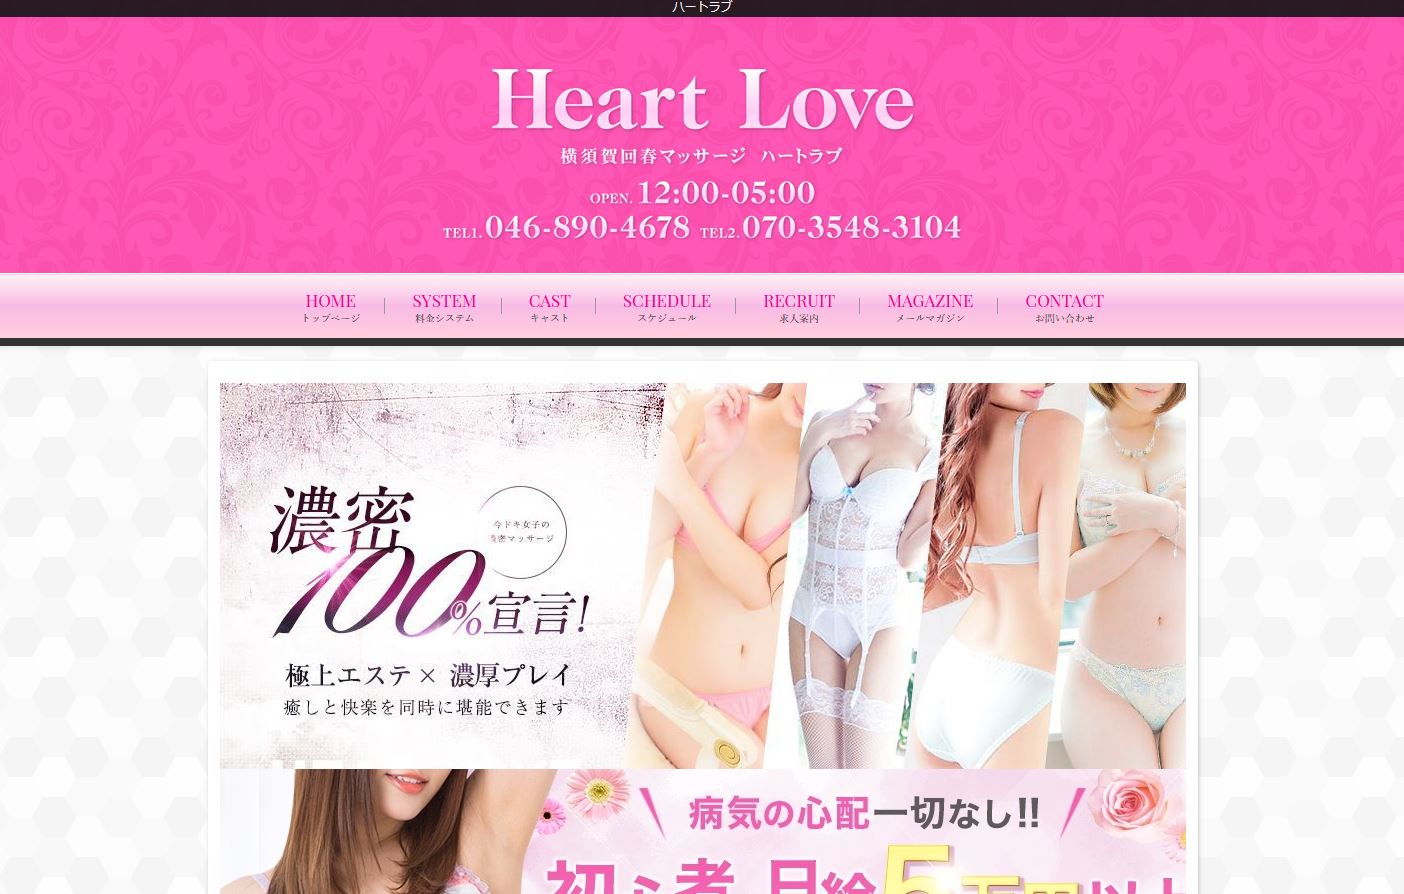 横浜・川崎のデリヘル横須賀回春マッサージハートラブのホームページ画像